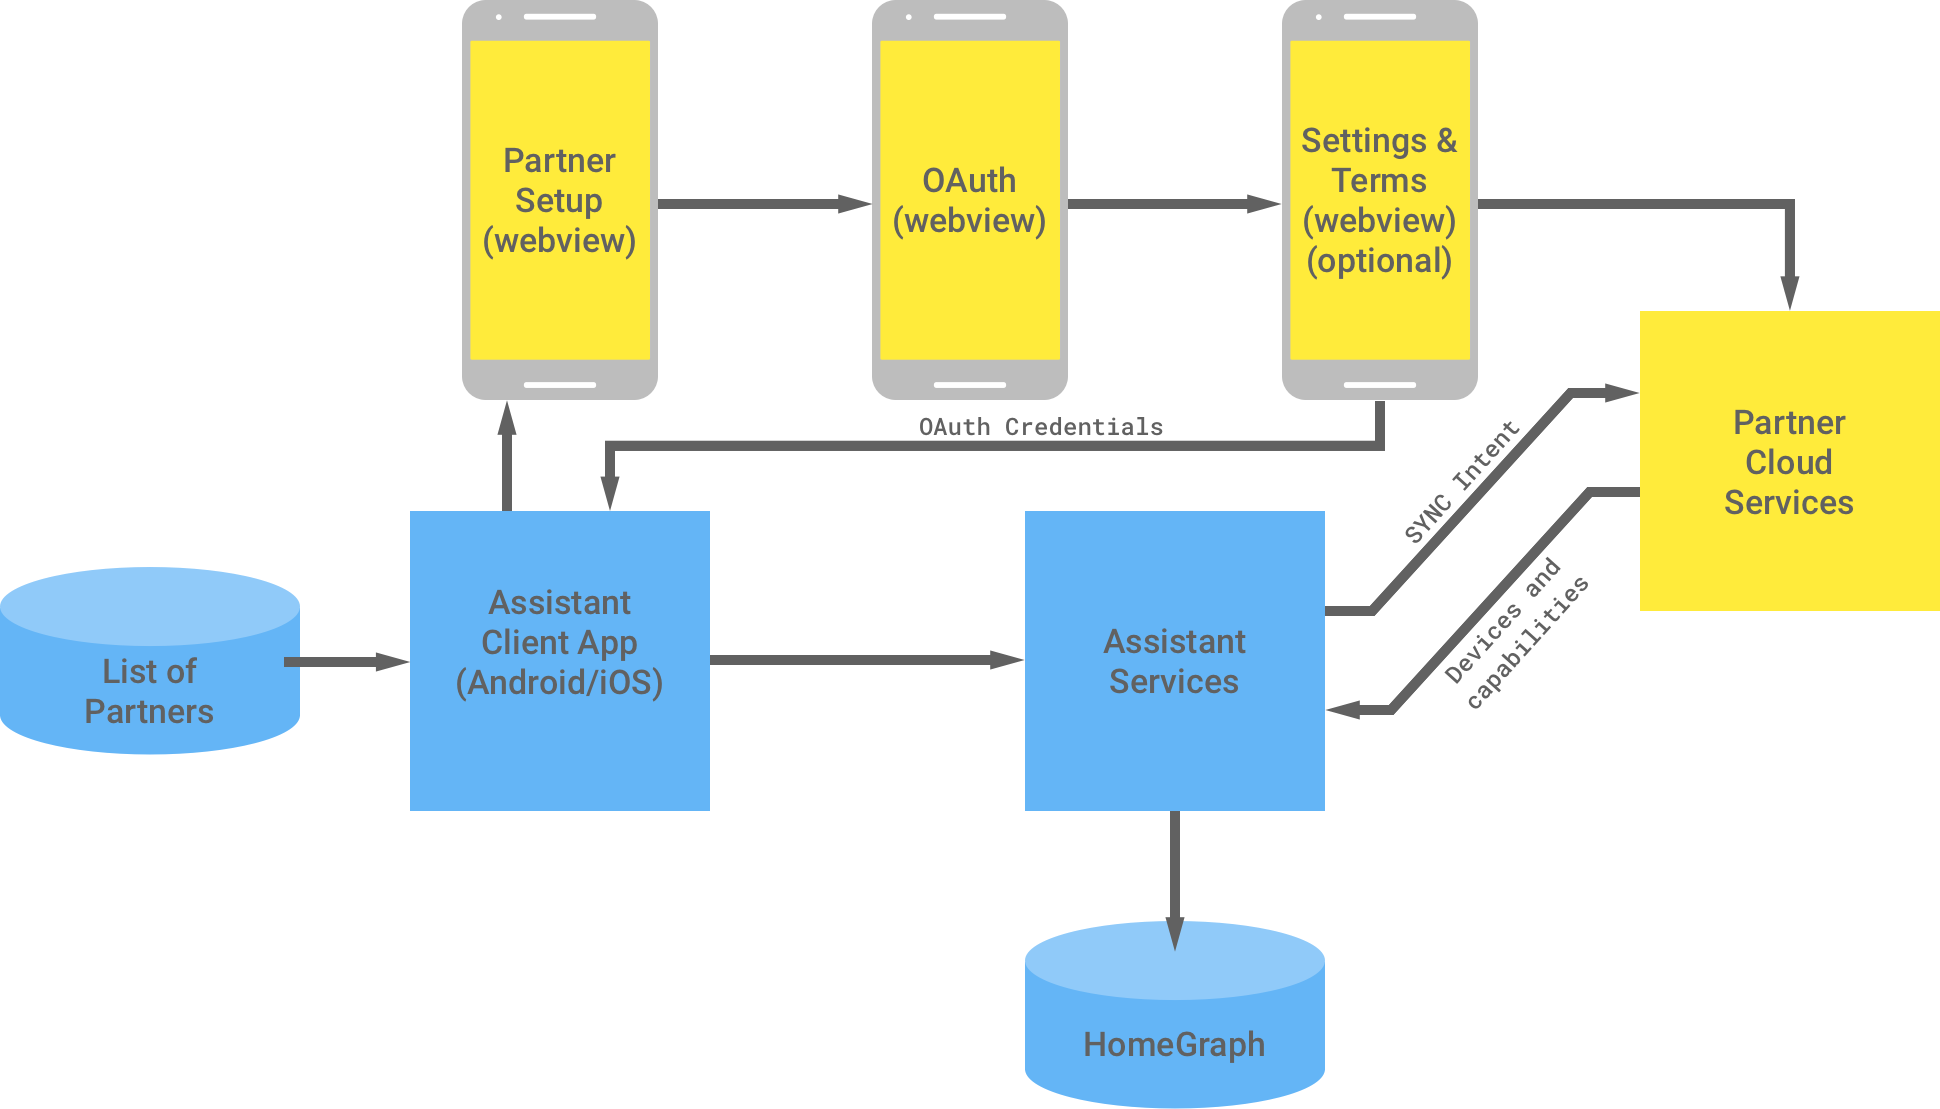 Diese Abbildung zeigt die Interaktion zwischen der Google-Infrastruktur und der Partnerinfrastruktur. In der Google-Infrastruktur finden Sie eine Liste von Partnern, die für die Assistant-Client-App zur Verfügung stehen und dann zur Partnerinfrastruktur fließen, um die OAuth-Authentifizierung abzuschließen. Die OAuth-Authentifizierung auf Partnerseite ist die WebView für die Partnereinrichtung, die OAuth-Webansicht, die optionalen Einstellungen und Nutzungsbedingungen sowie die Clouddienste von Partnern. Die Partnerinfrastruktur gibt dann die OAuth-Anmeldedaten an die Assistant-Clientanwendung zurück. Die Clouddienste des Partners senden die verfügbaren Geräte und Funktionen an die Assistant-Dienste, die dann die Informationen in Home Graph speichern.